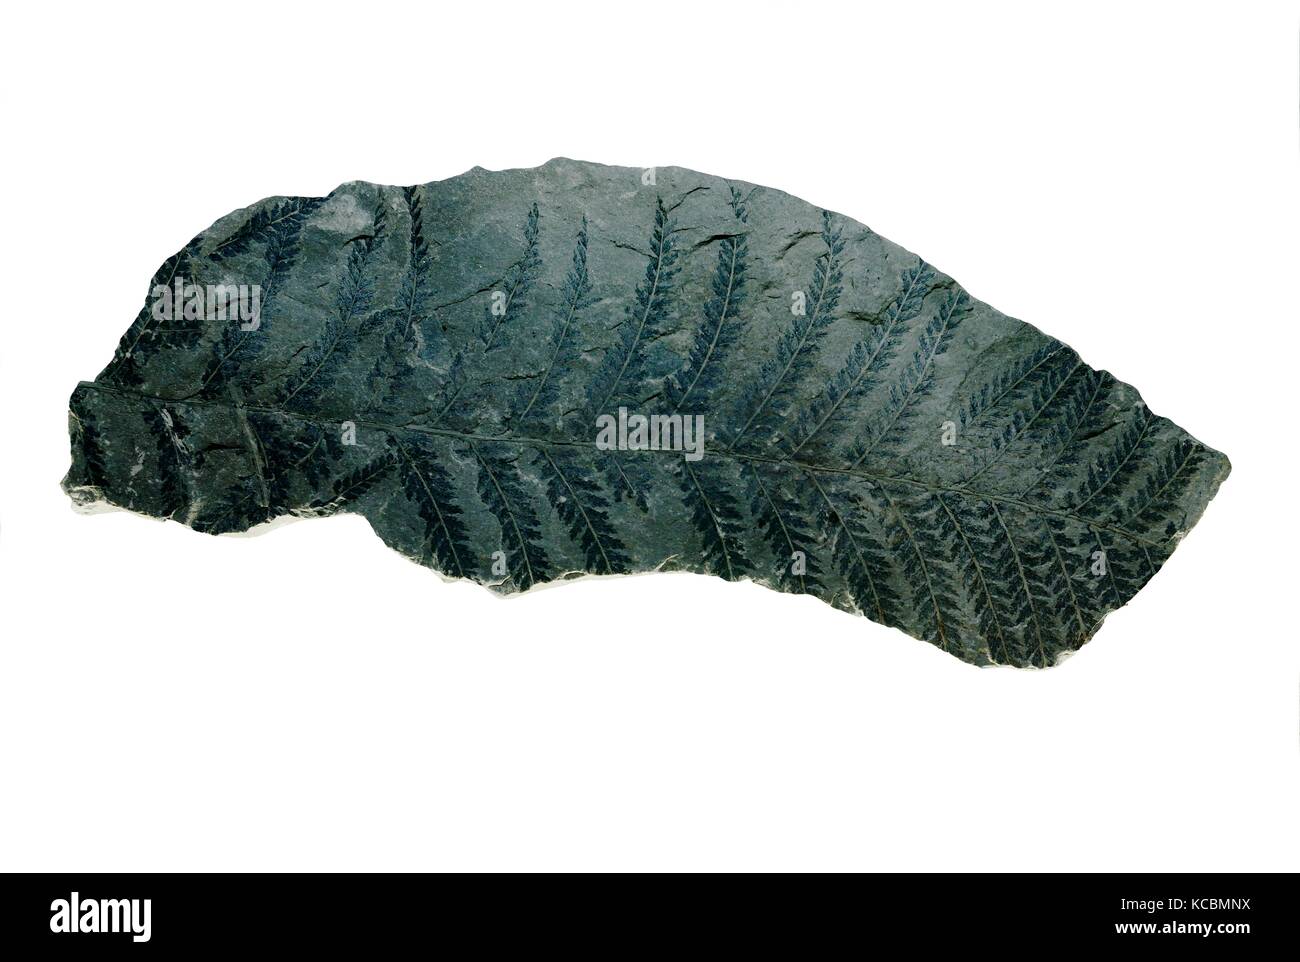 Sphenopteris carbonisiert Fossile versteinerte Farn Wedel Blatt coniopteris hymenophylloides von Jurassic Ära in China Coal Museum der Stadt Taiyuan, Provinz Shanxi. Stockfoto